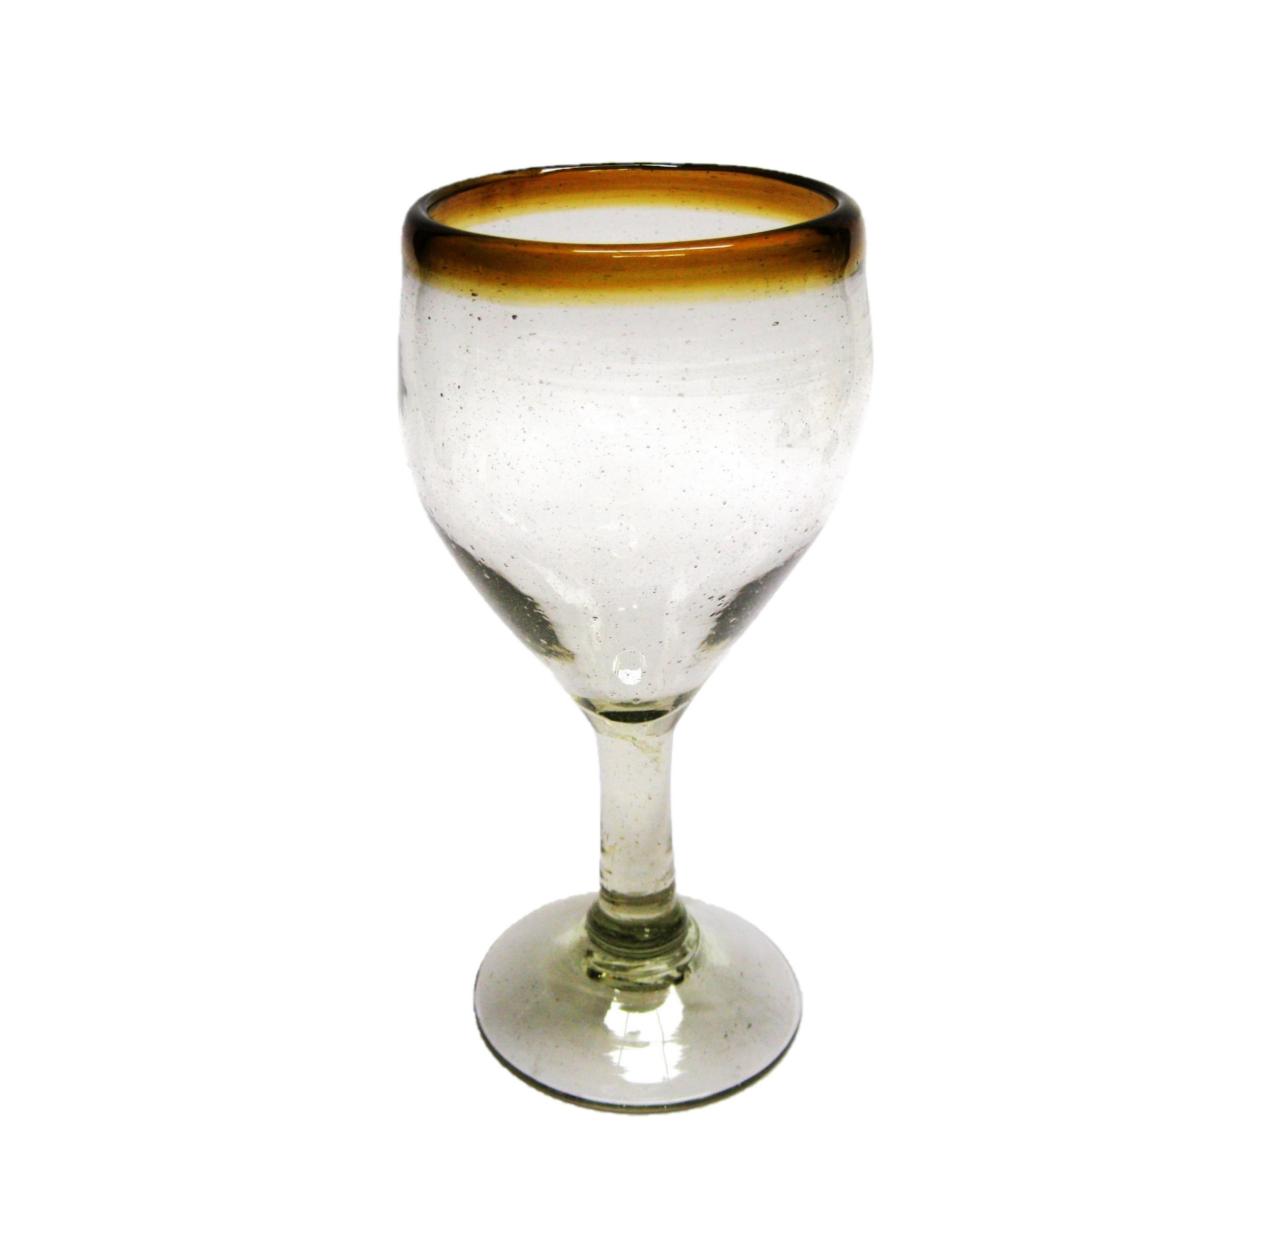 Wholesale Amber Rim Glassware / Amber Rim 7 oz Small Wine Glasses  / Capture the bouquet of fine red wine with these wine glasses bordered with a bright, amber color rim.